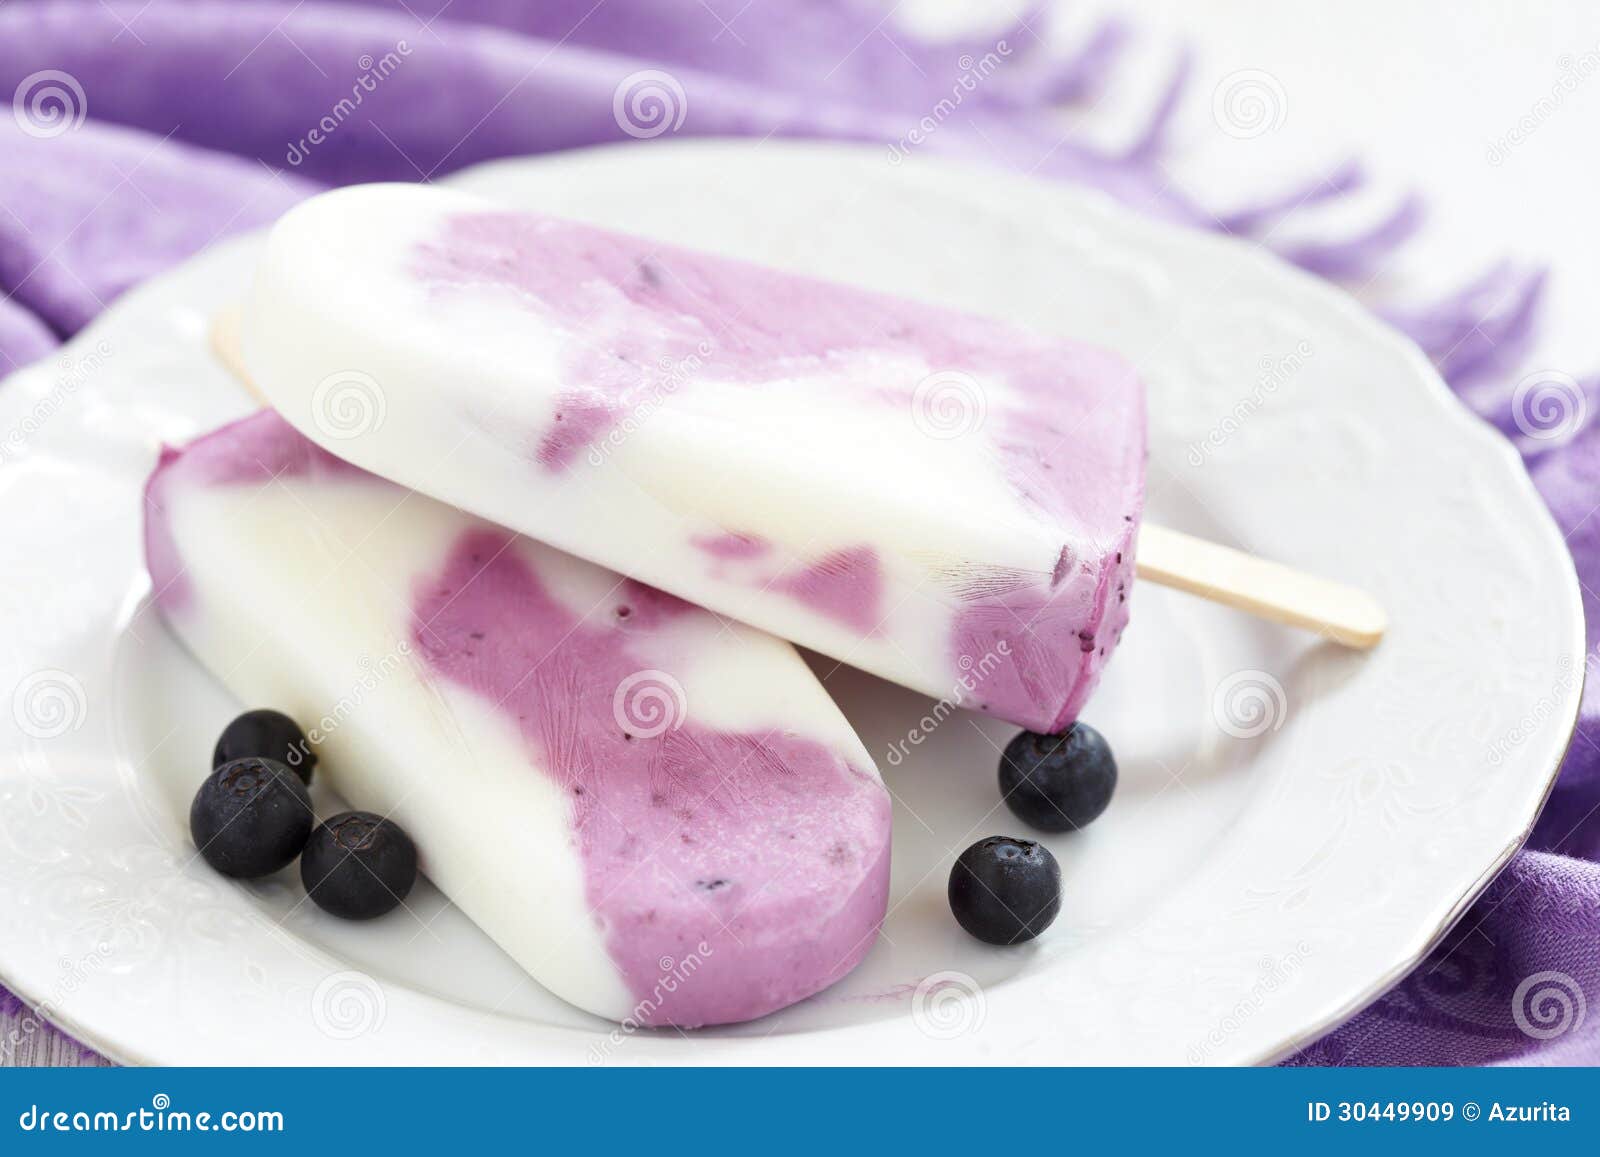 炎炎夏日里 那般招人爱——【蓝莓酸奶冰淇淋】_蓝莓酸奶冰淇淋_烧焦的Apple的日志_美食天下